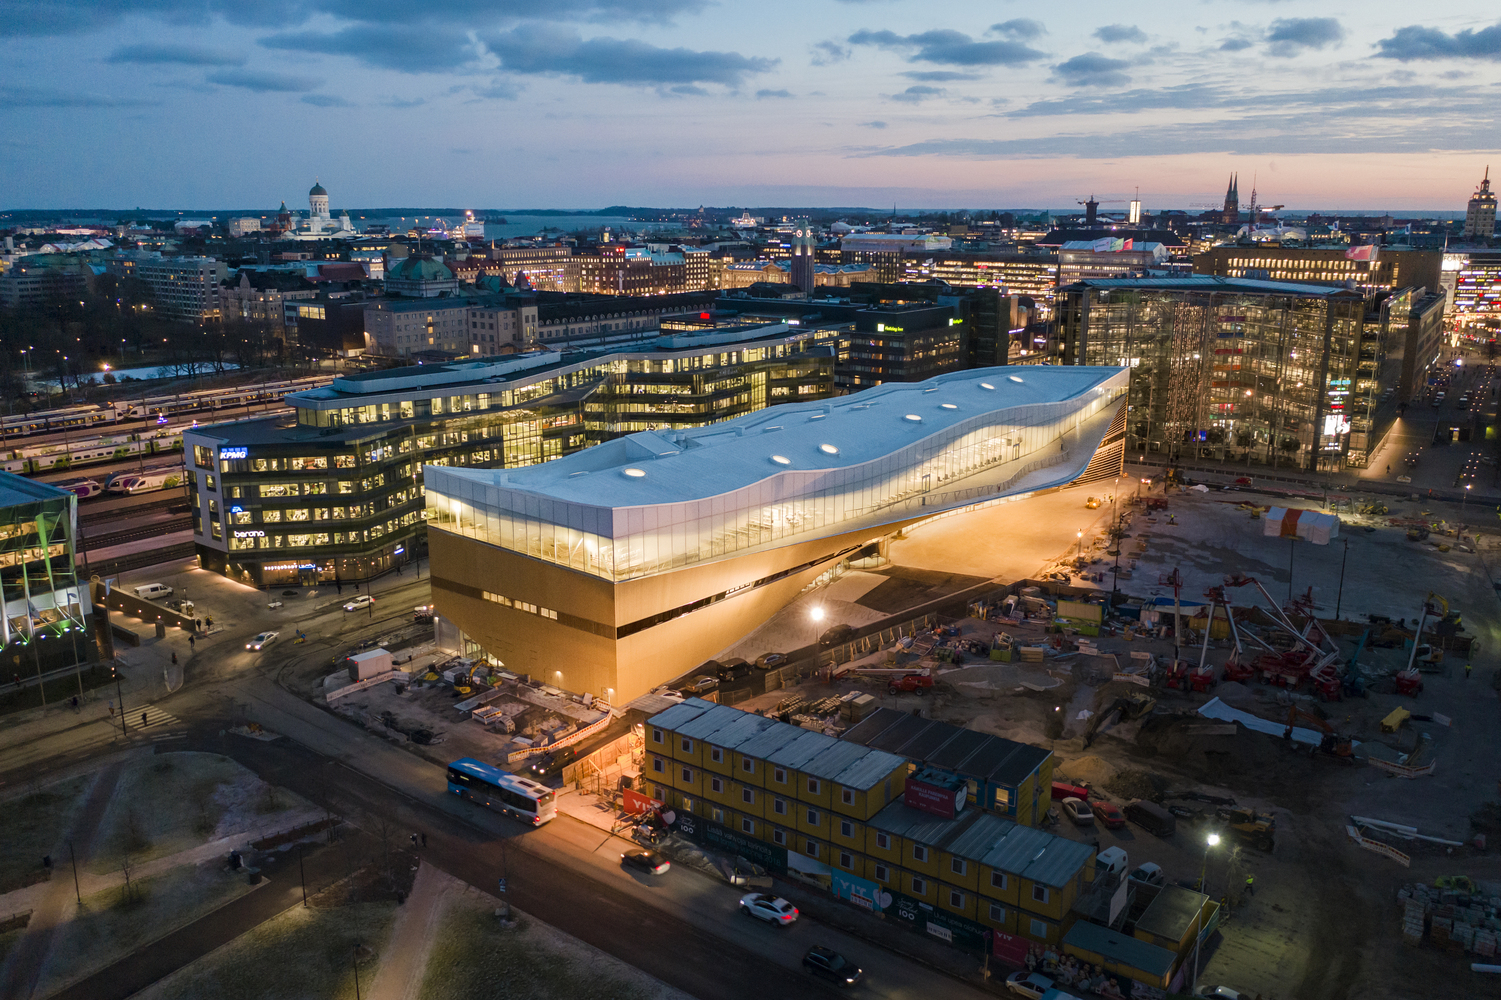 Hình ảnh thư viện Oodi - Thư viện hiện đại nhất Phần Lan